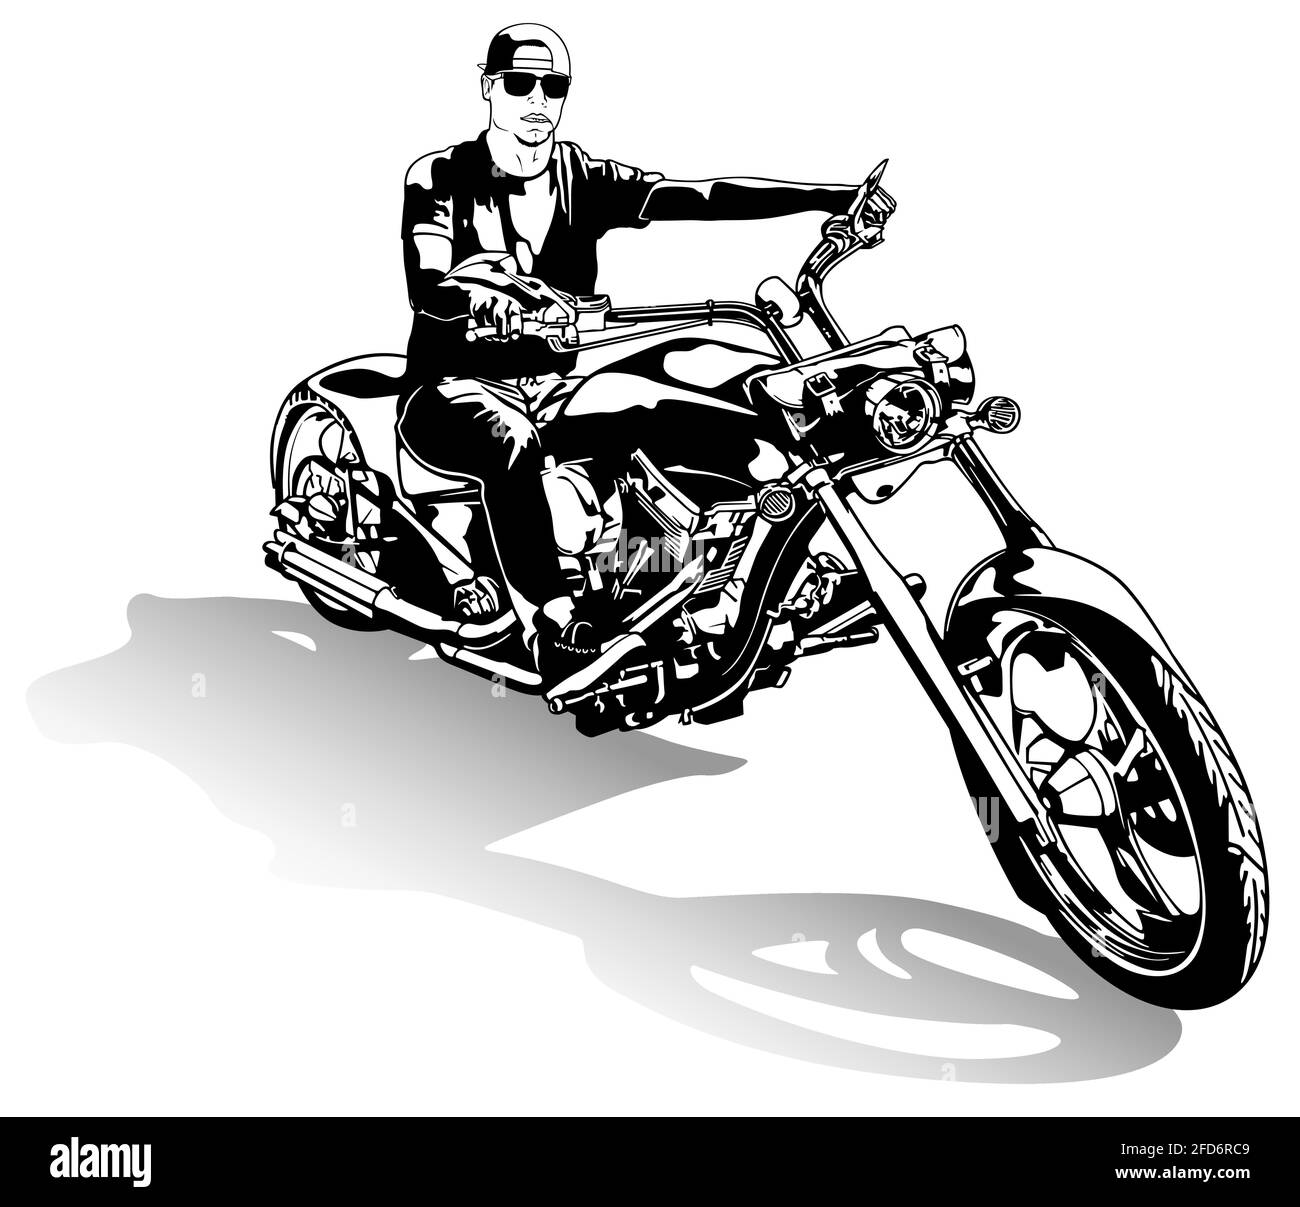 Motocycliste sur le dessin de moto Illustration de Vecteur